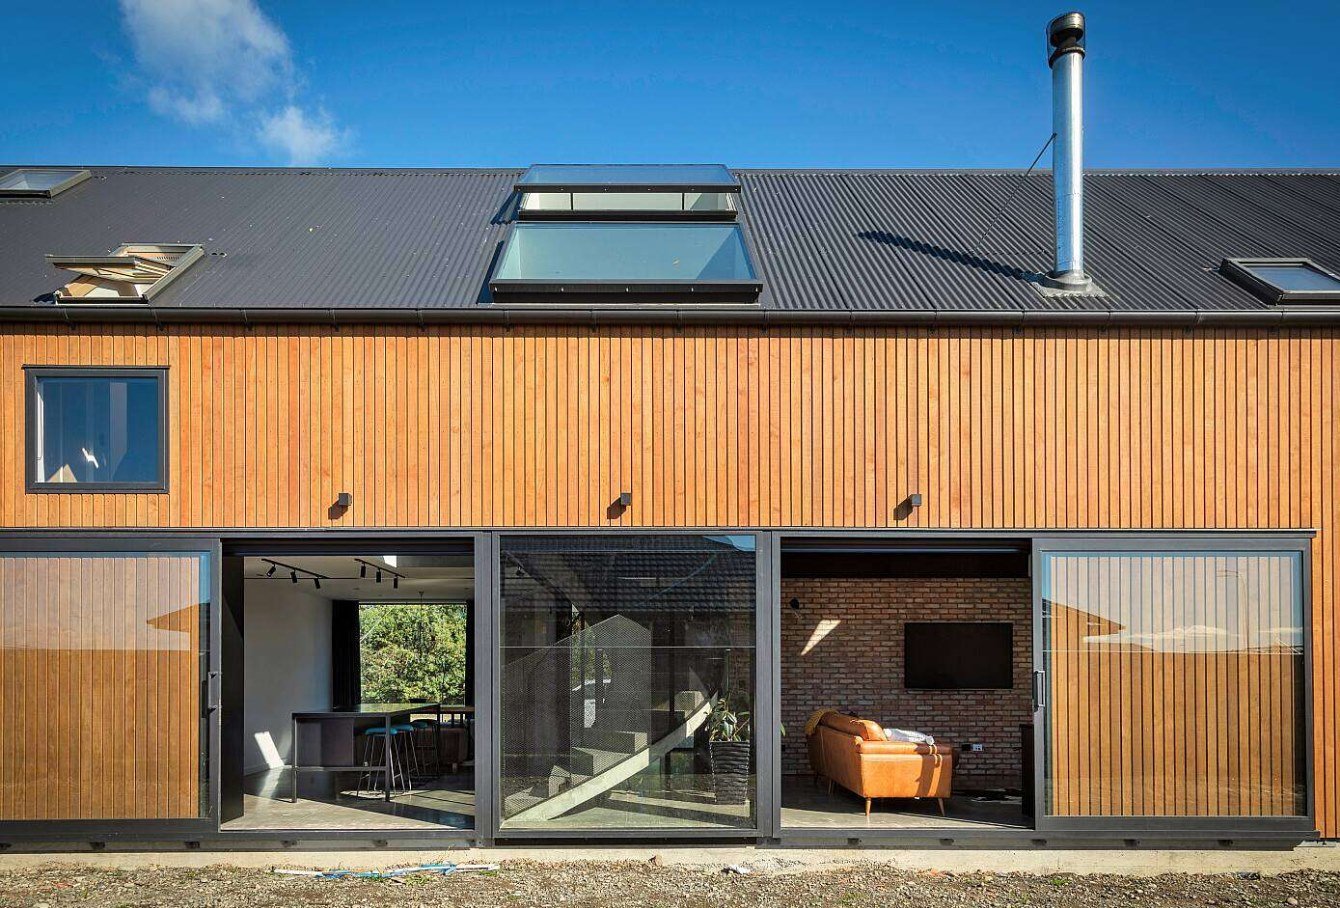 Čistota a minimalismus. Moderní stodola nabízí prostorné bydlení